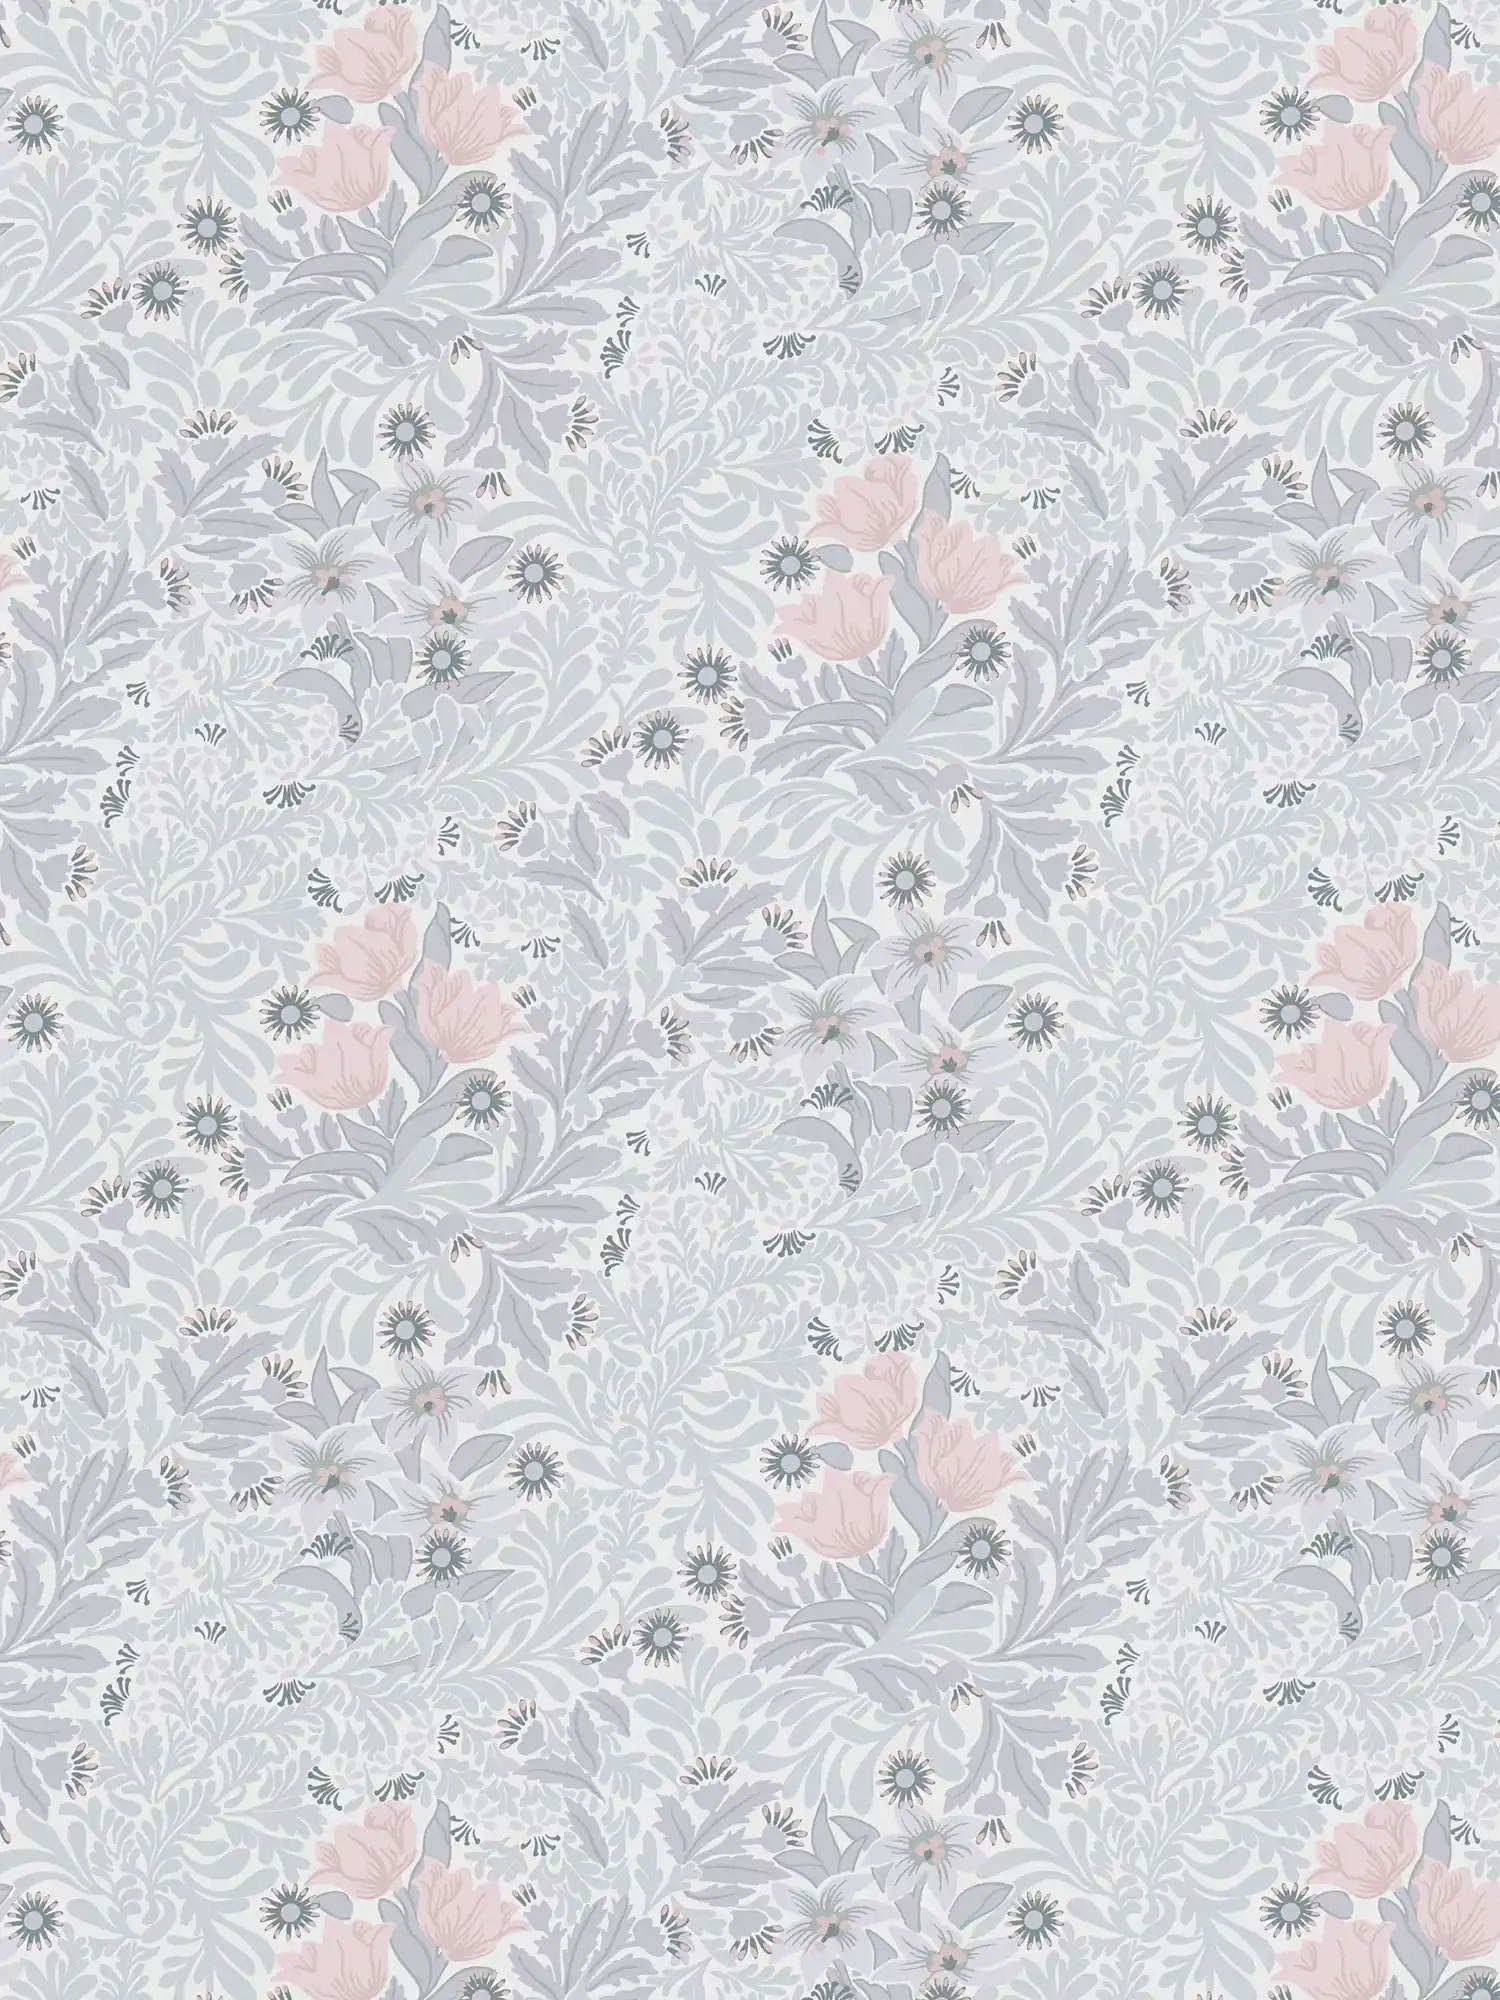         Papier peint intissé à motifs floraux dans des tons doux - gris, rose, blanc
    